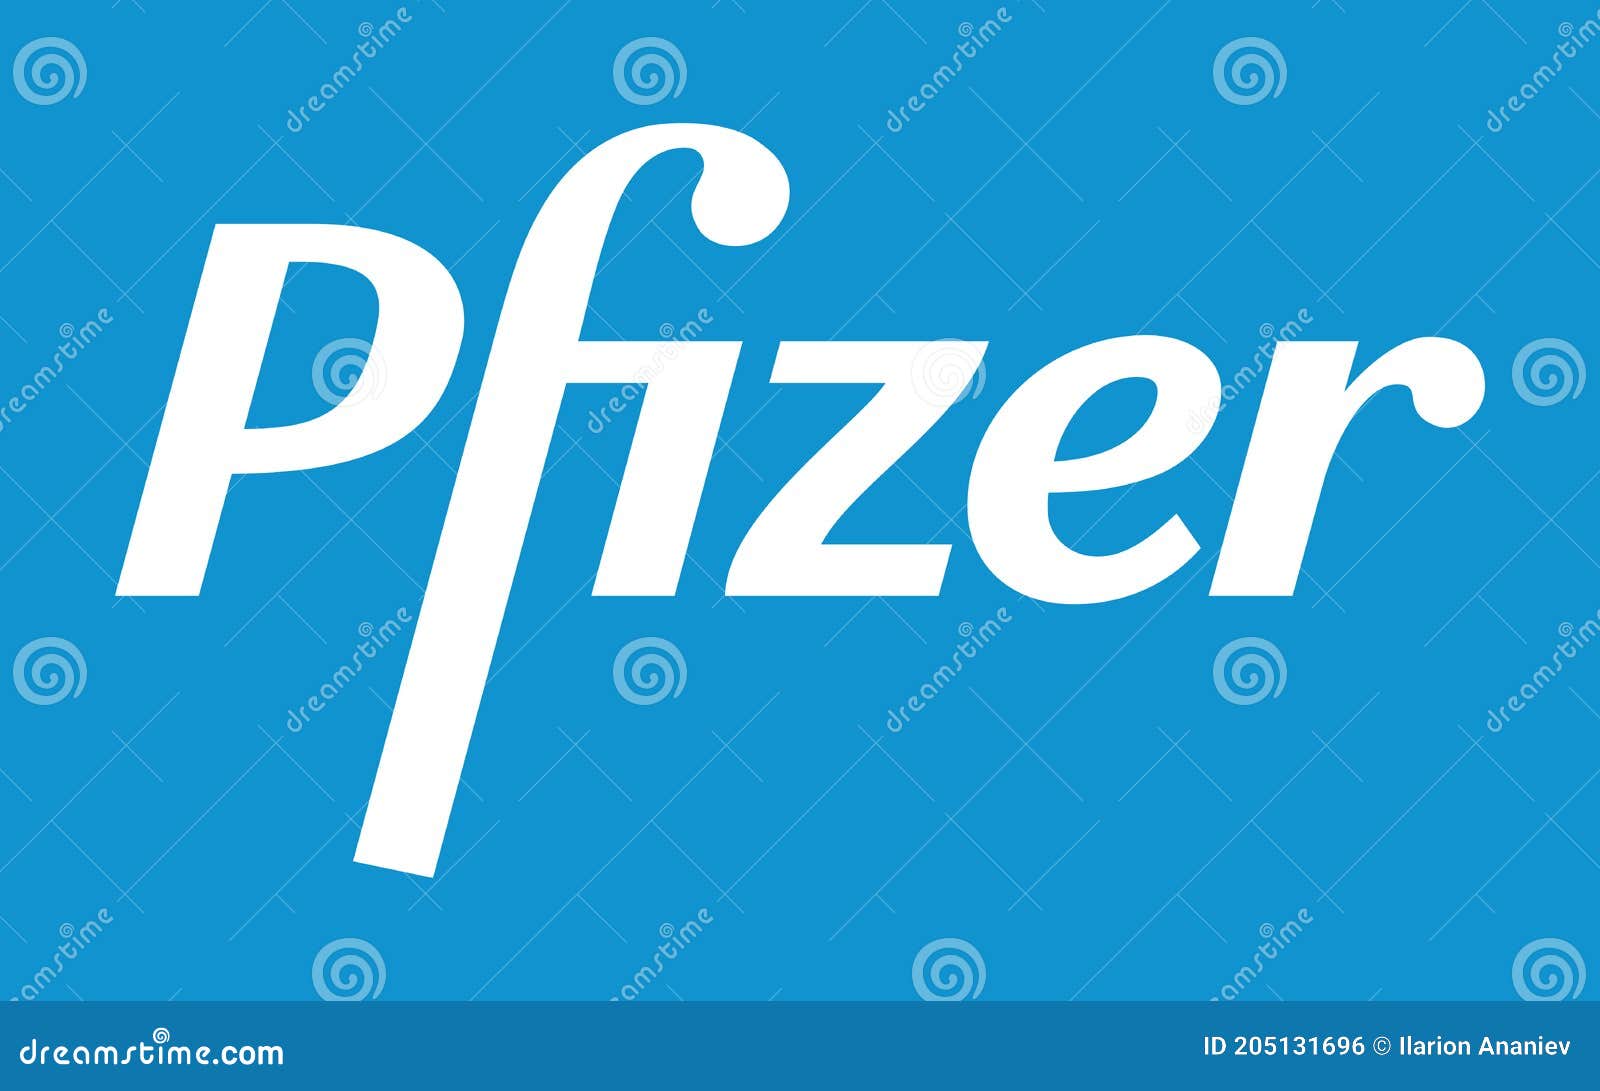 Pfizer Eyes Big Drop in Covid-Related Revenues in 2023 | IndustryWeek